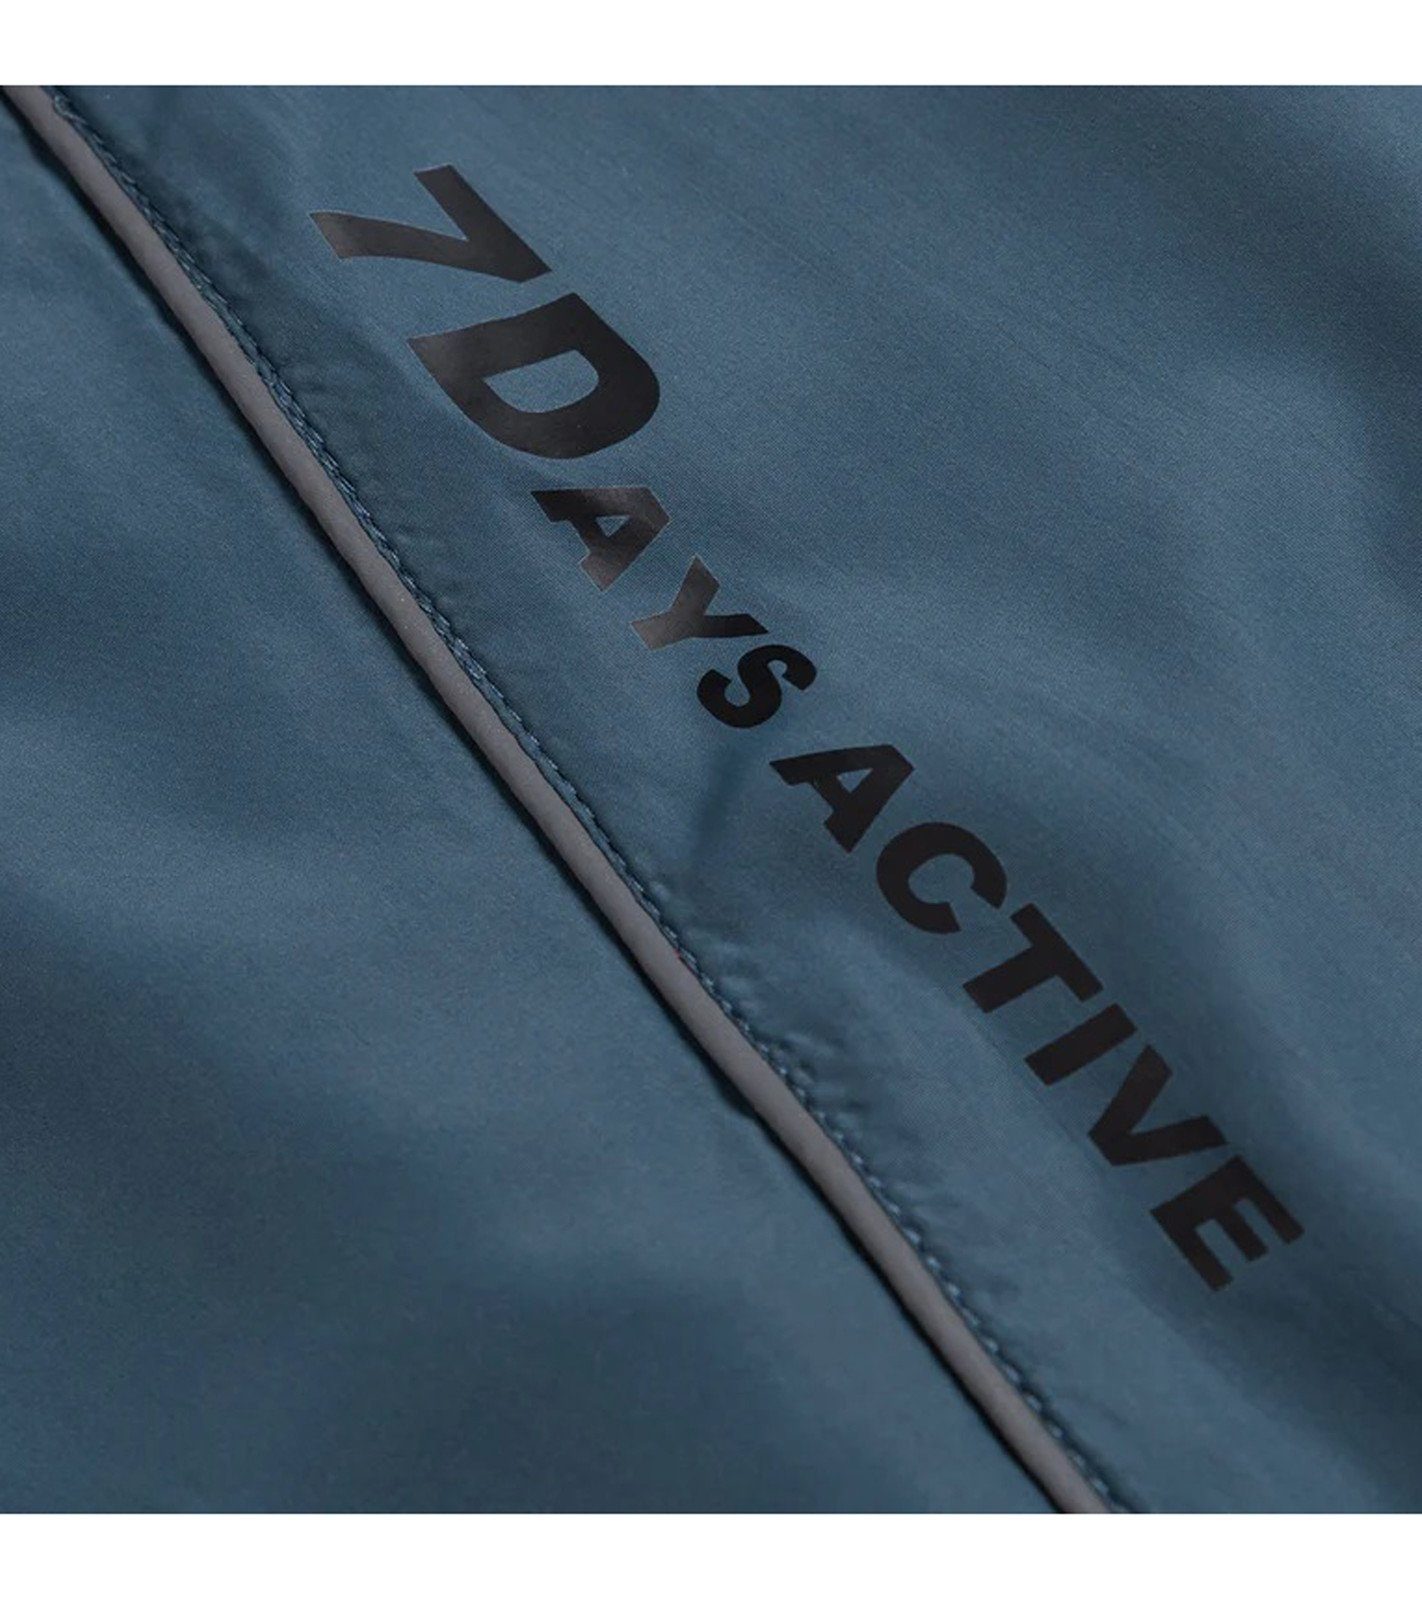 Lauf-Jacke DAYS Blau Sport-Jacke DAYS Details mit Track 7 Active Trainingsjacke Jacket Aicot 7 Active reflektierenden